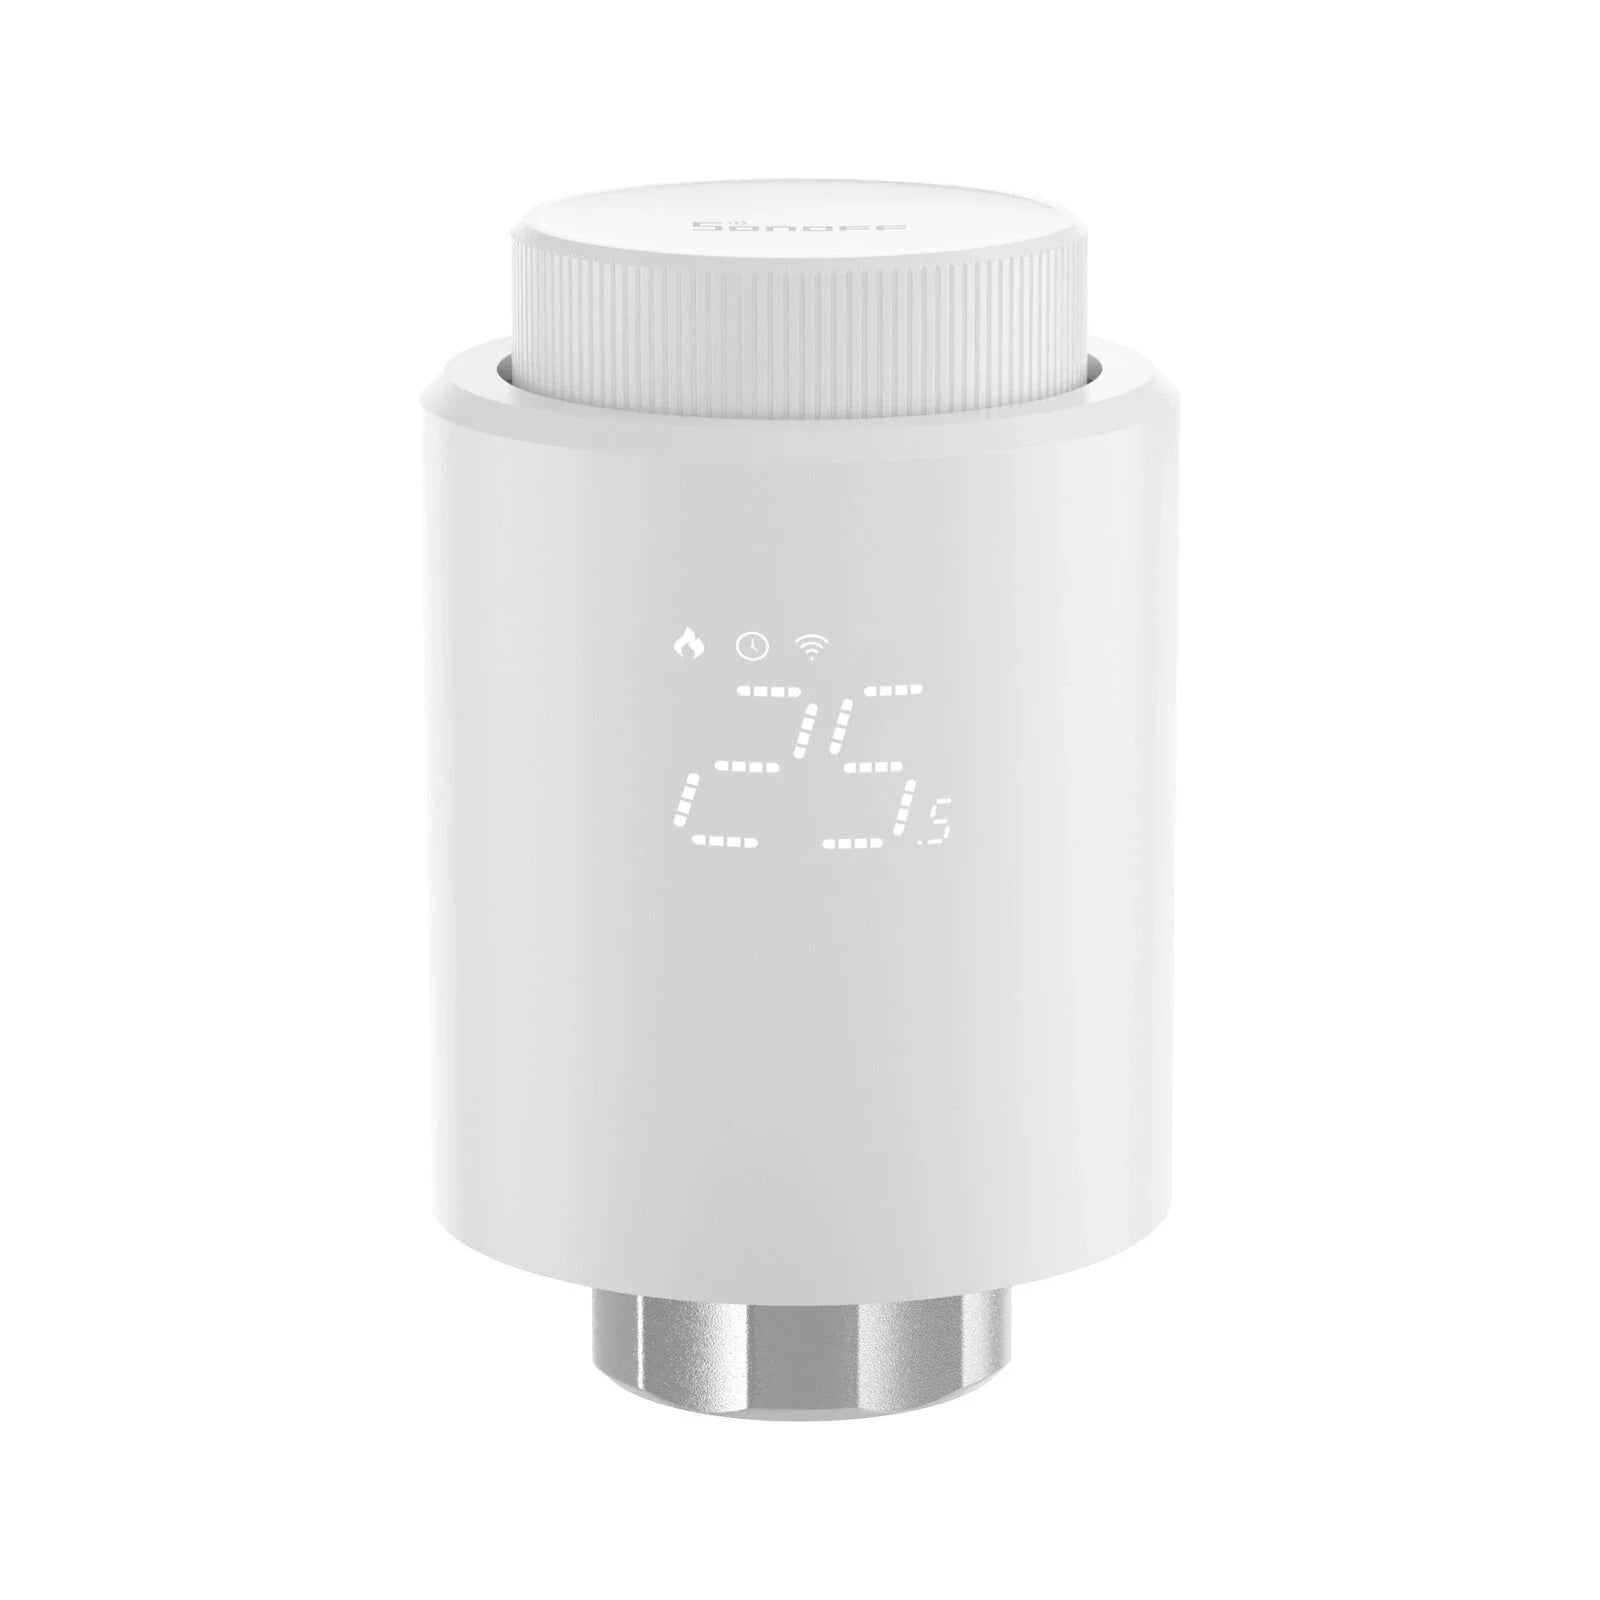 O SONOFF TRVZB é um Termostato Inteligente para Radiadores que irá revolucionar a forma como controlas o clima na tua casa.